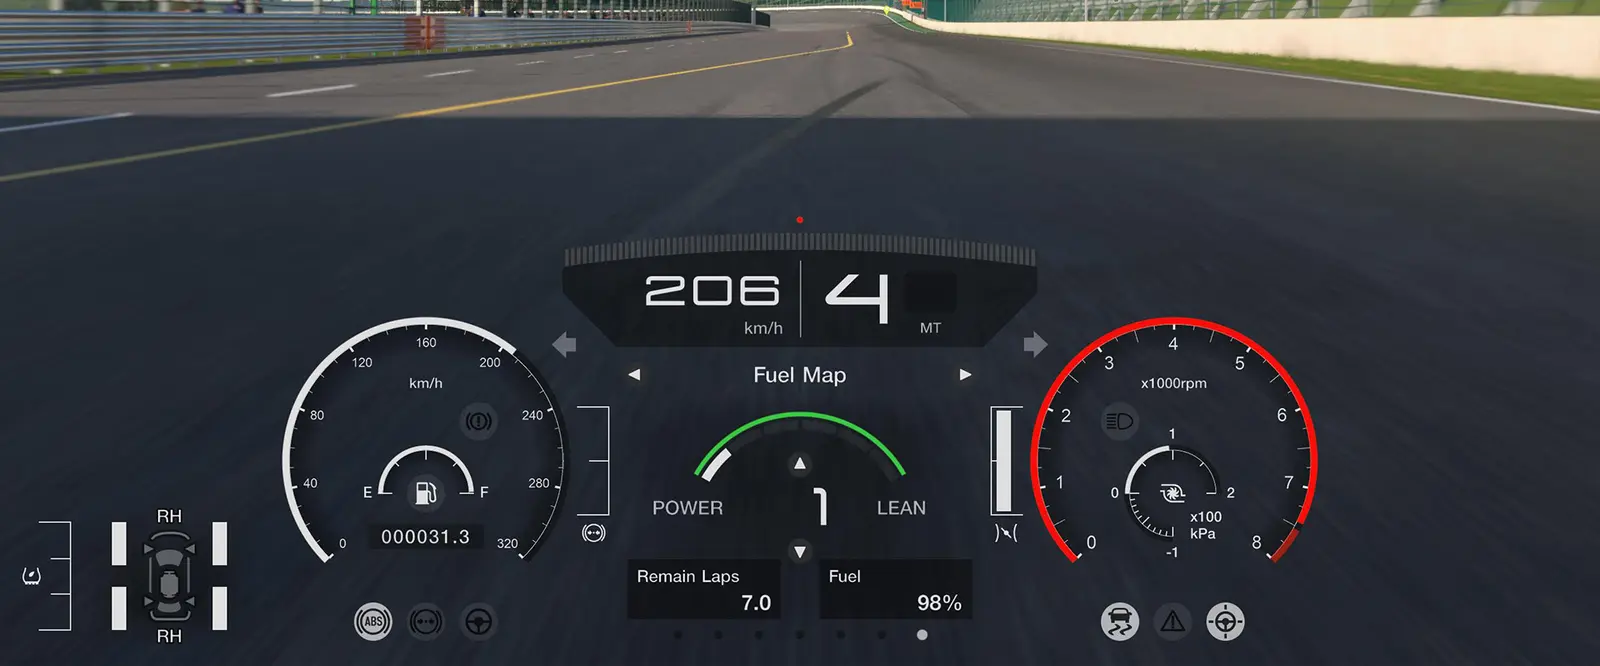 Gran Turismo 7 adjust fuel map